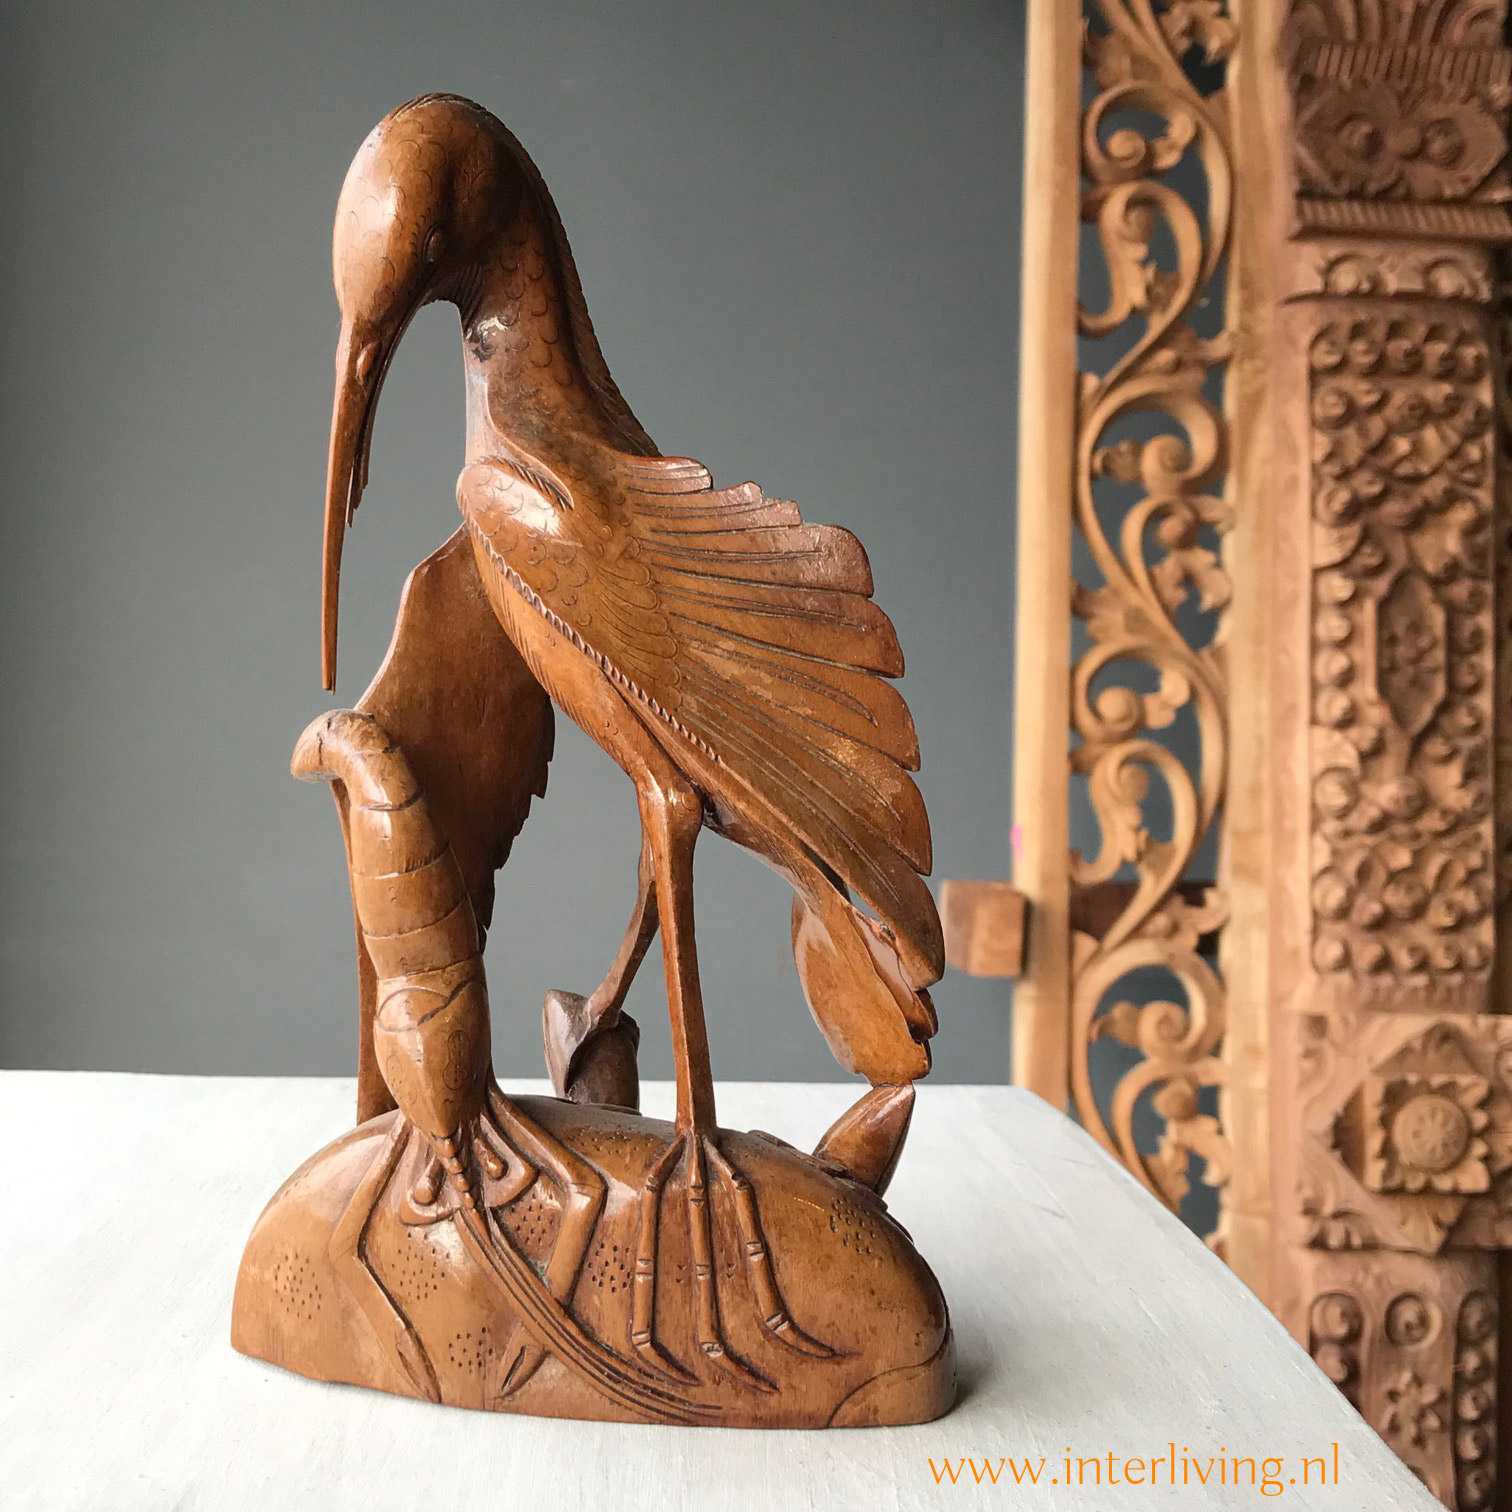 Krijt Eerder scheuren Handgemaakt mindfulness cadeau: houten teak beeldje, Balinese Art Deco